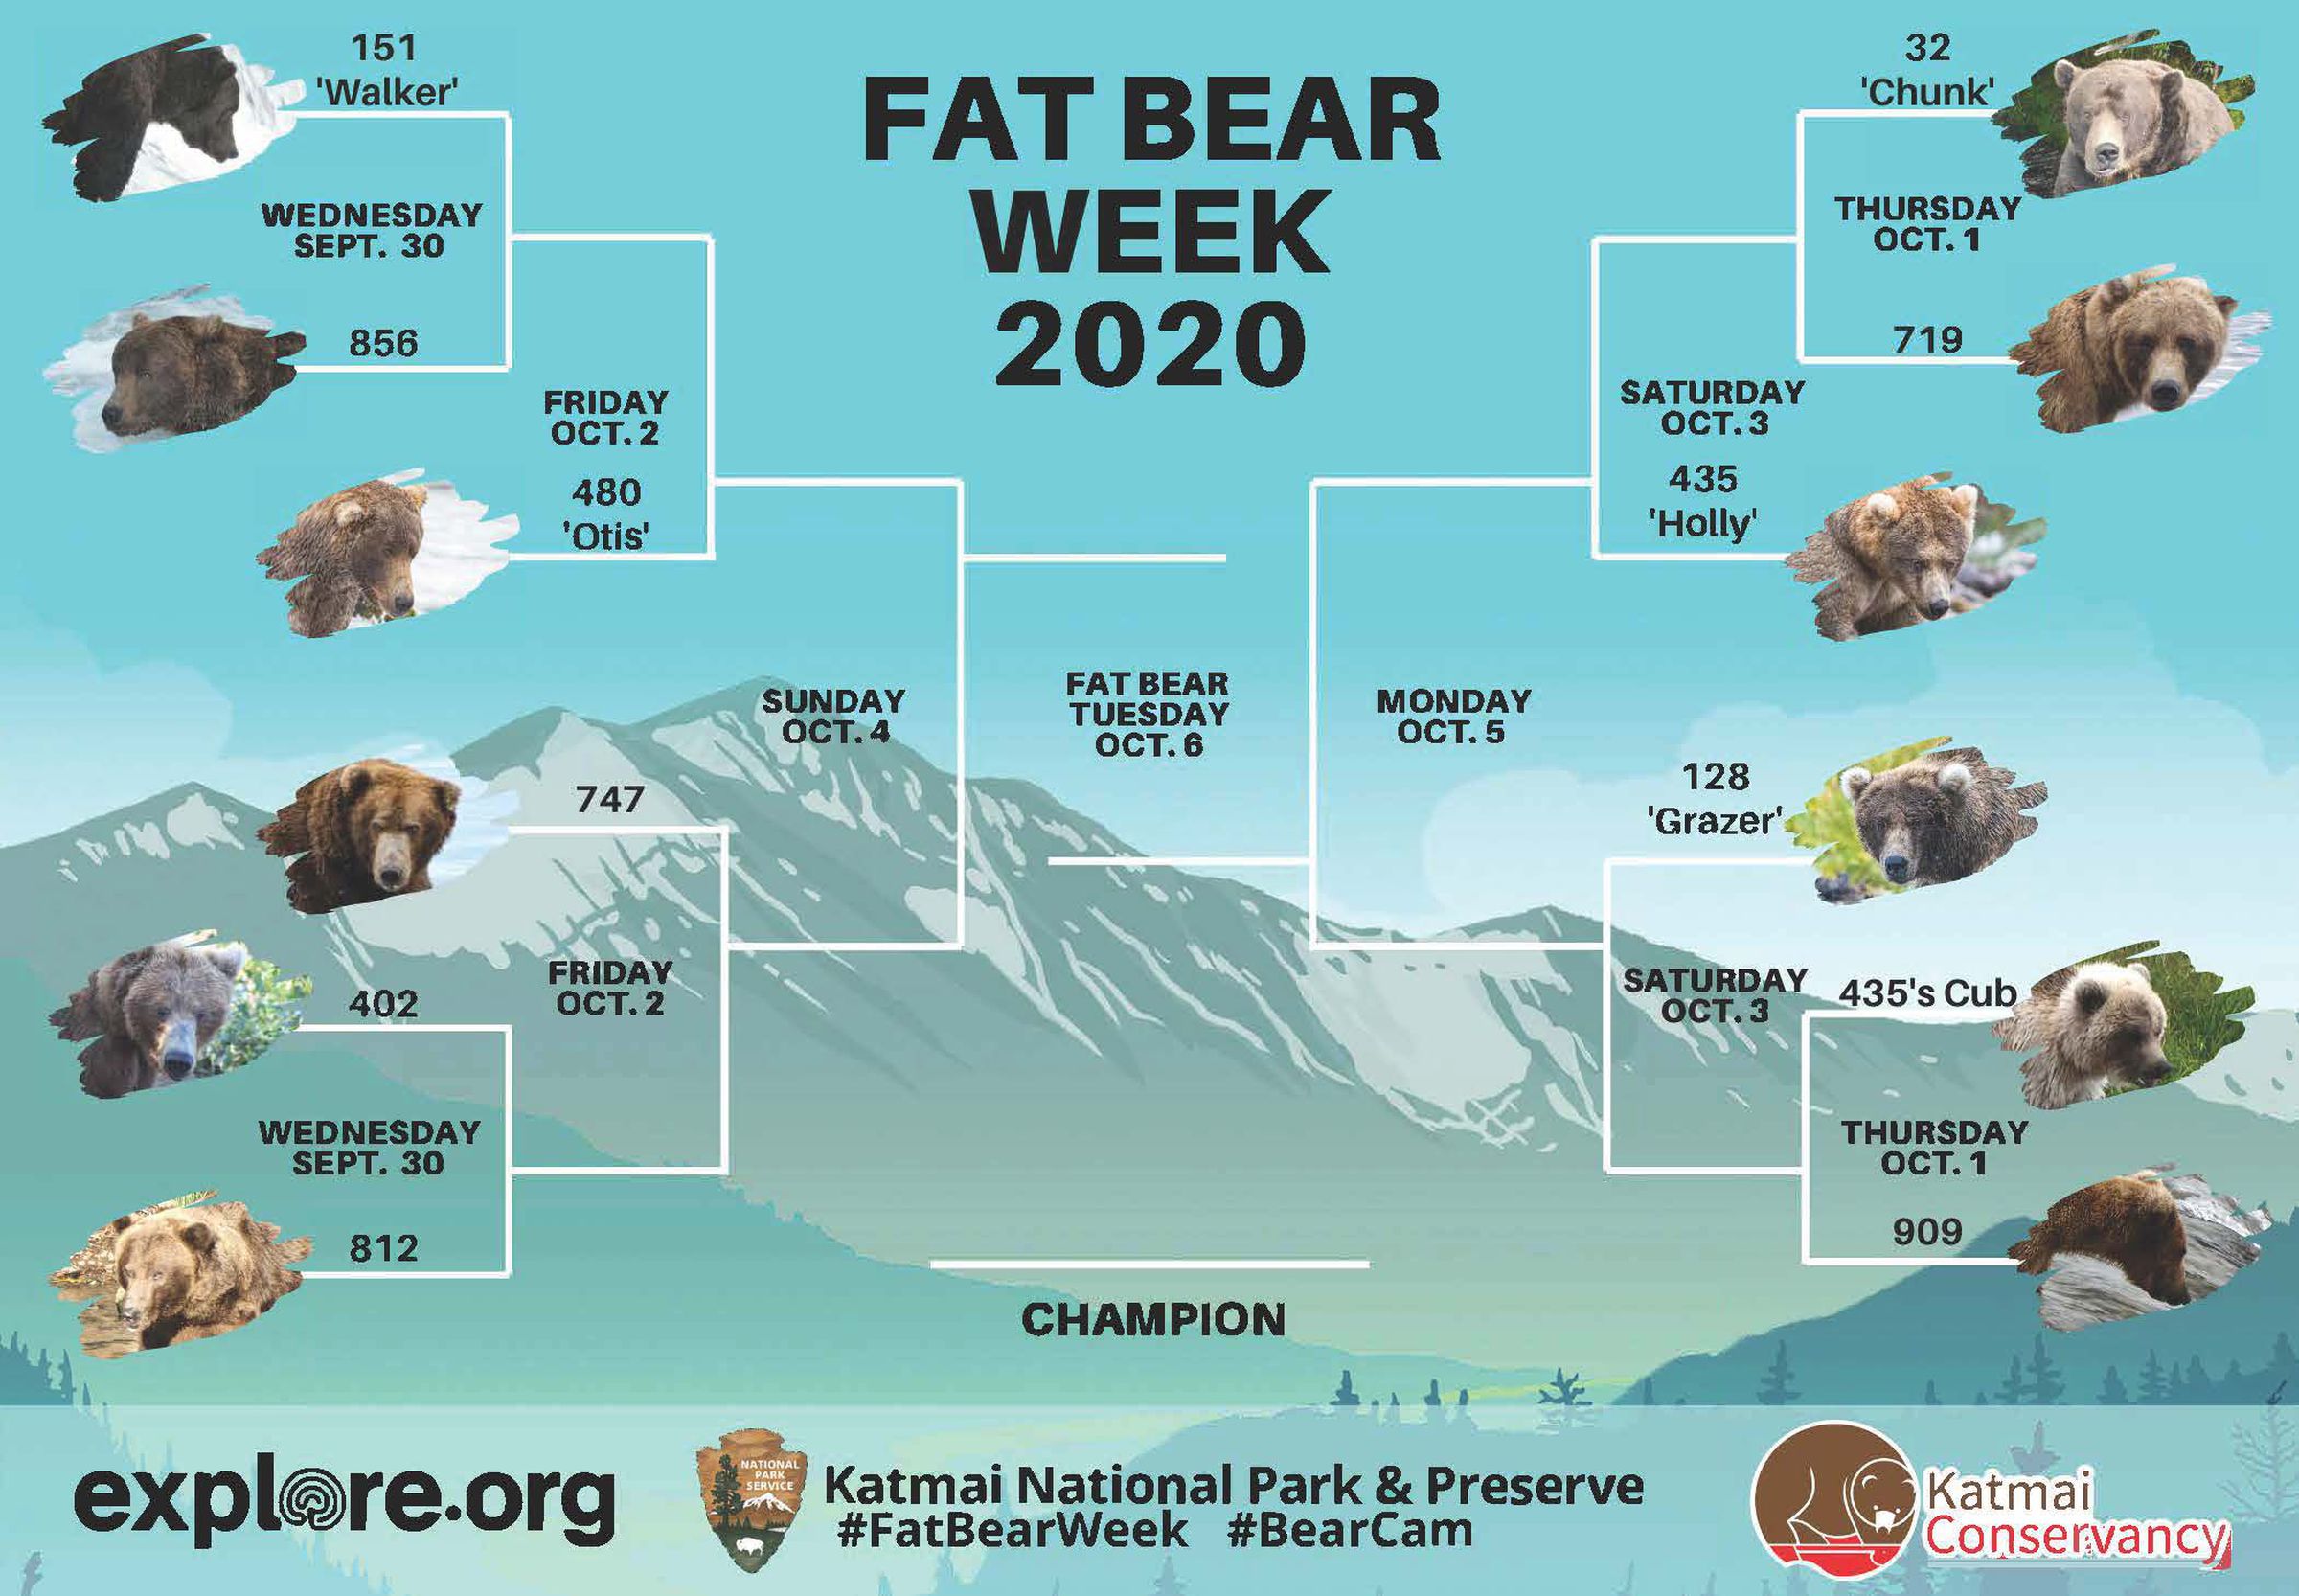 The Fat Bear Week 2020 bracket